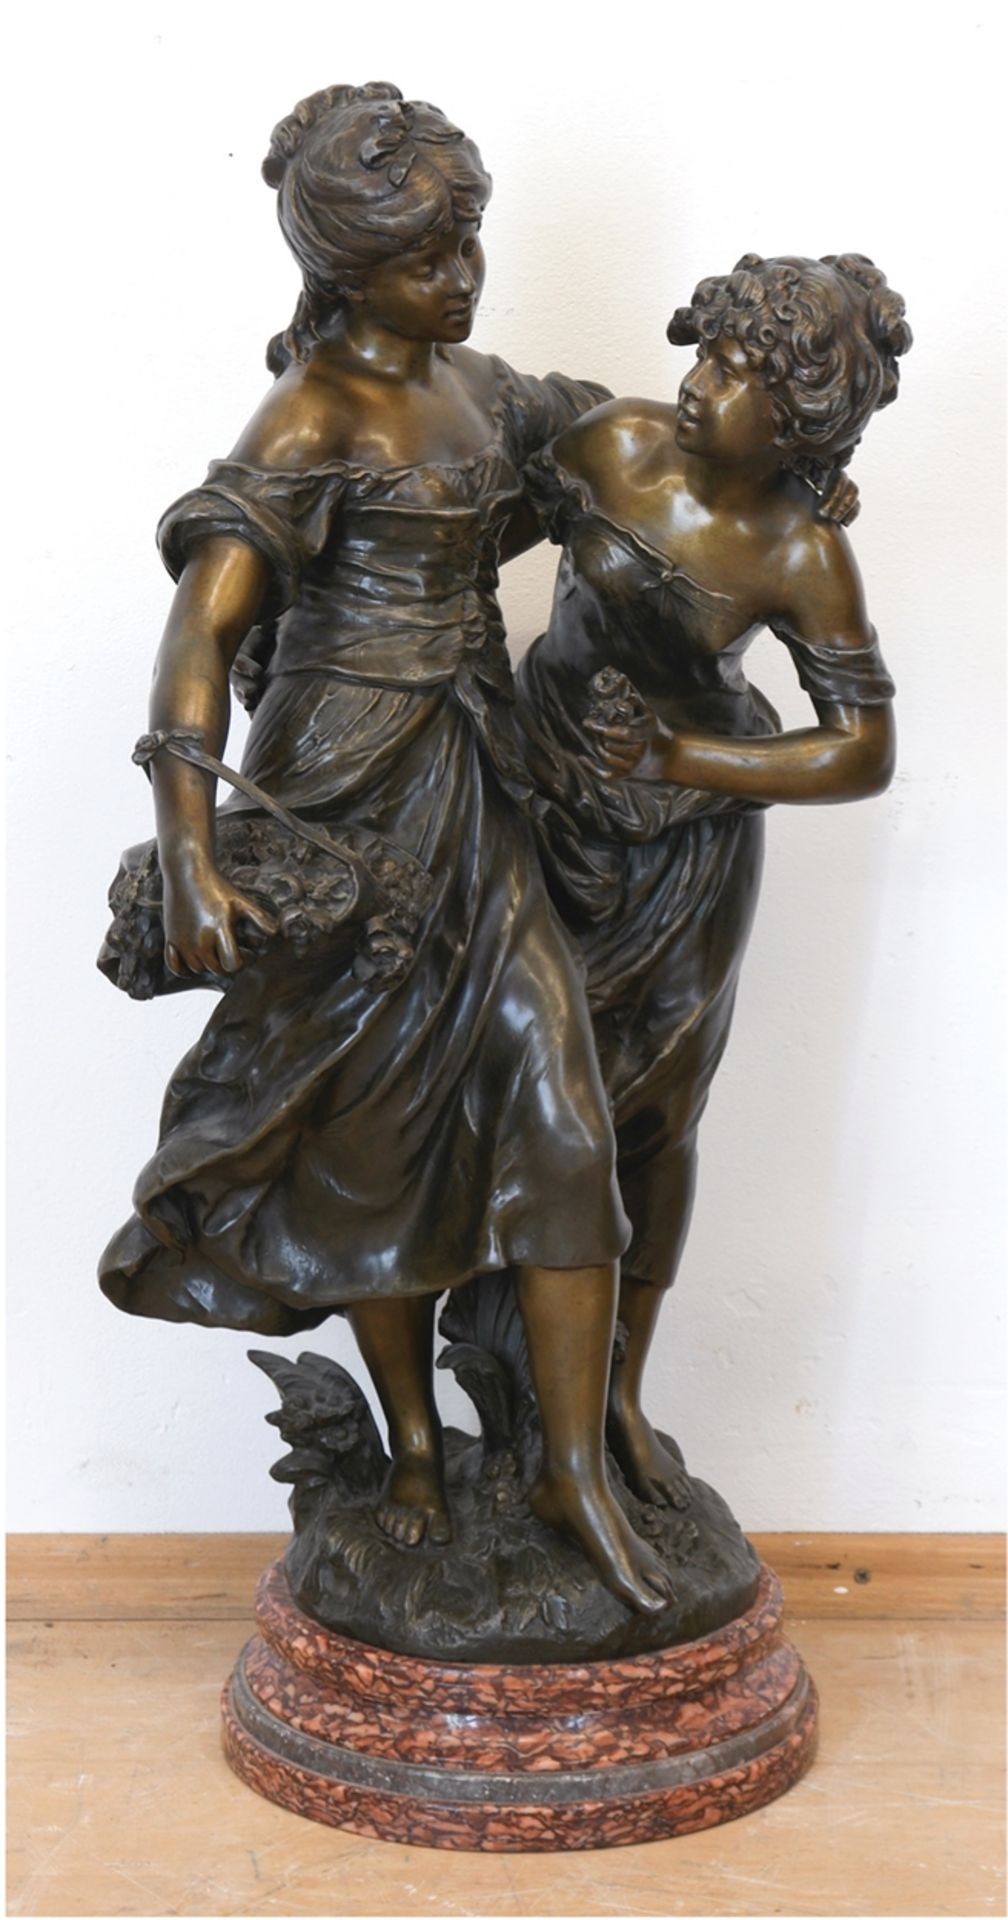 Skulptur "Amitié", Frankreich, Weißmetallguß, bronziert, sign. Auguste Mureau, franz. Gießermarke, 